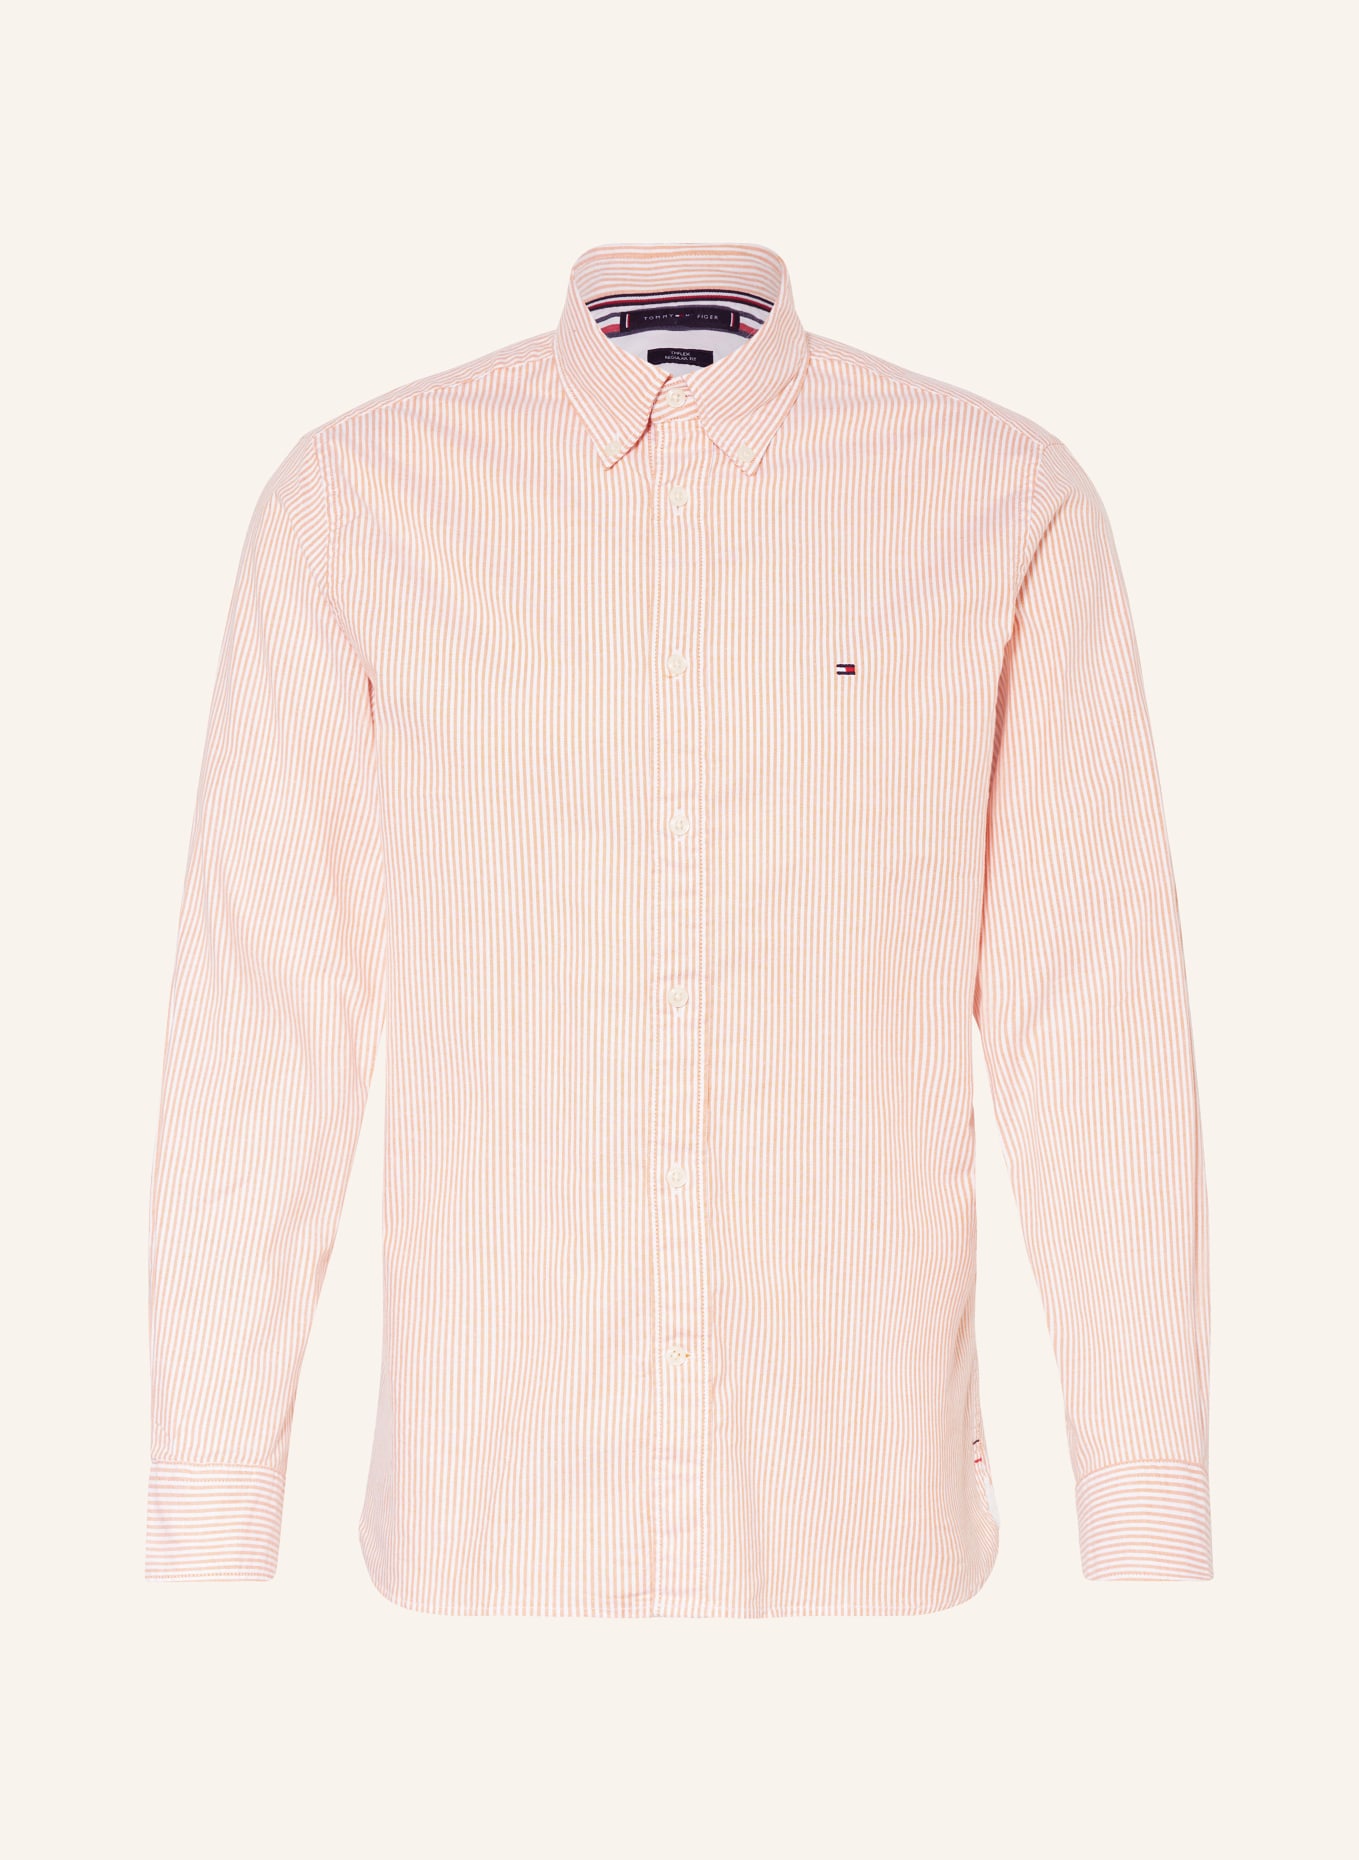 TOMMY HILFIGER Oxford shirt regular fit, Color: LIGHT ORANGE/ WHITE (Image 1)